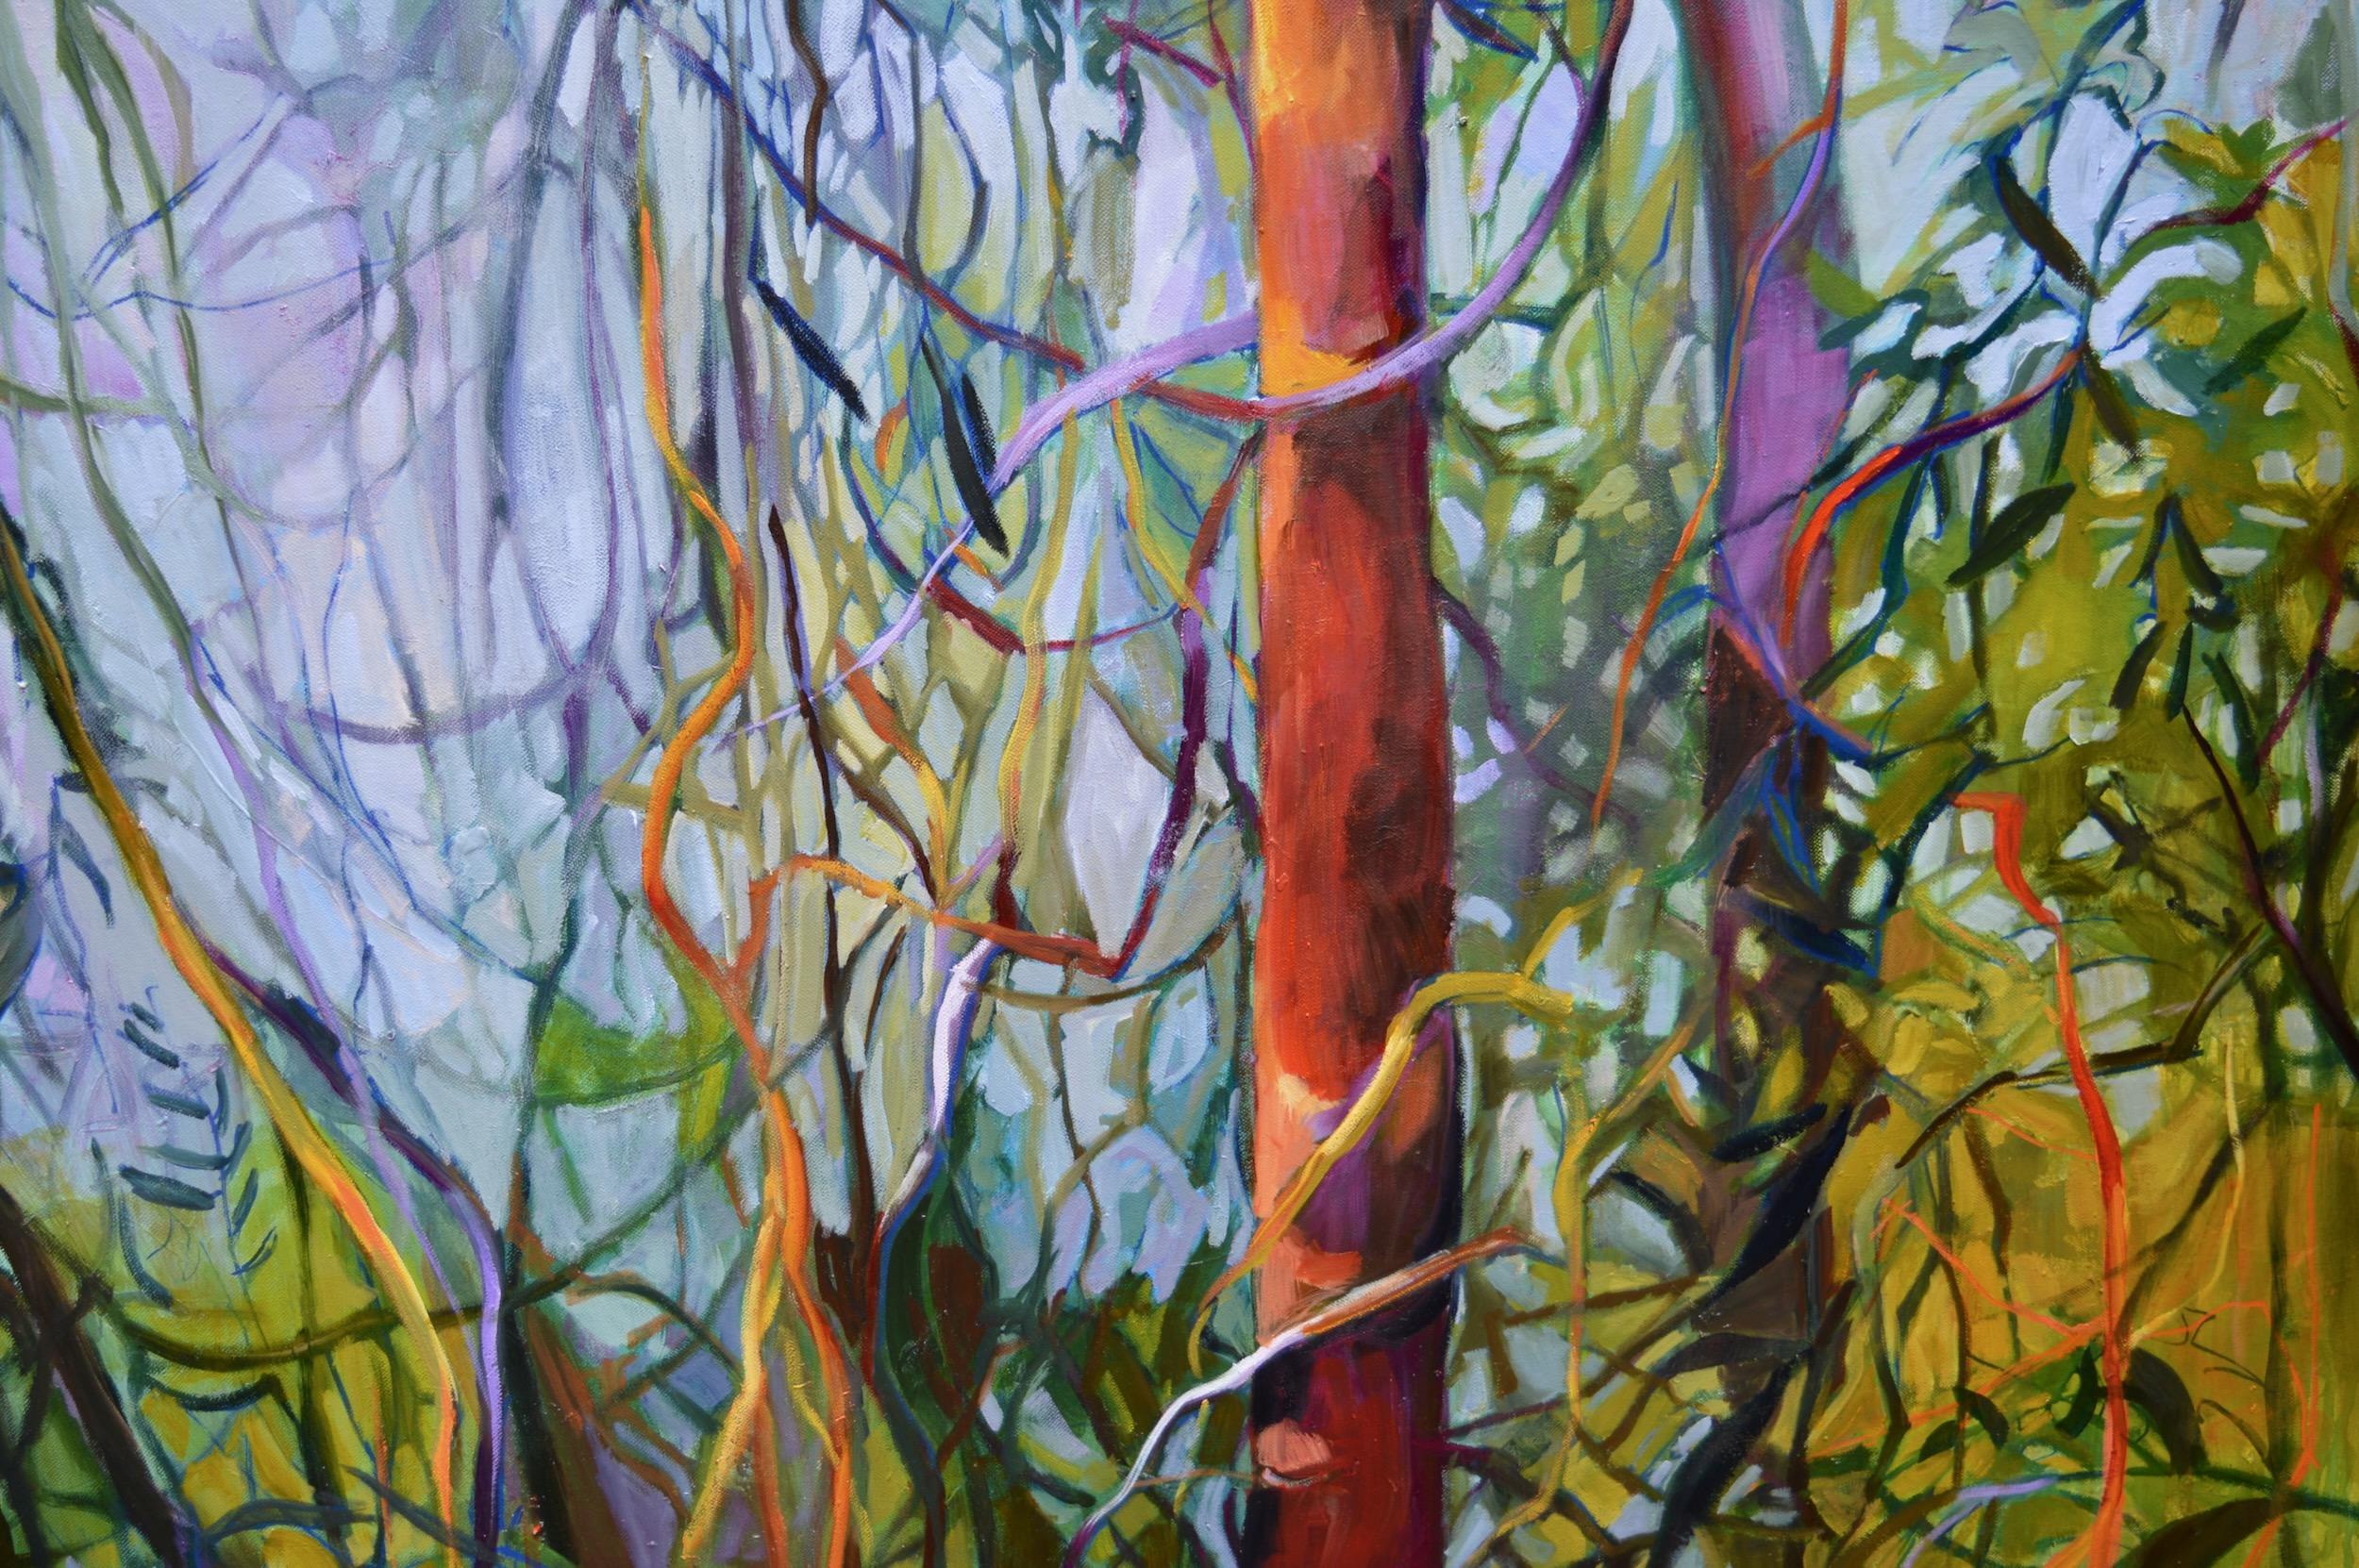 <p>Commentaires de l'artiste<br>Les vignes sauvages envahissent la forêt dans le paysage impressionniste de l'artiste Julia Hacker. L'excroissance drapée se projette dans des structures organiques et abstraites. Julia utilise une palette terreuse de